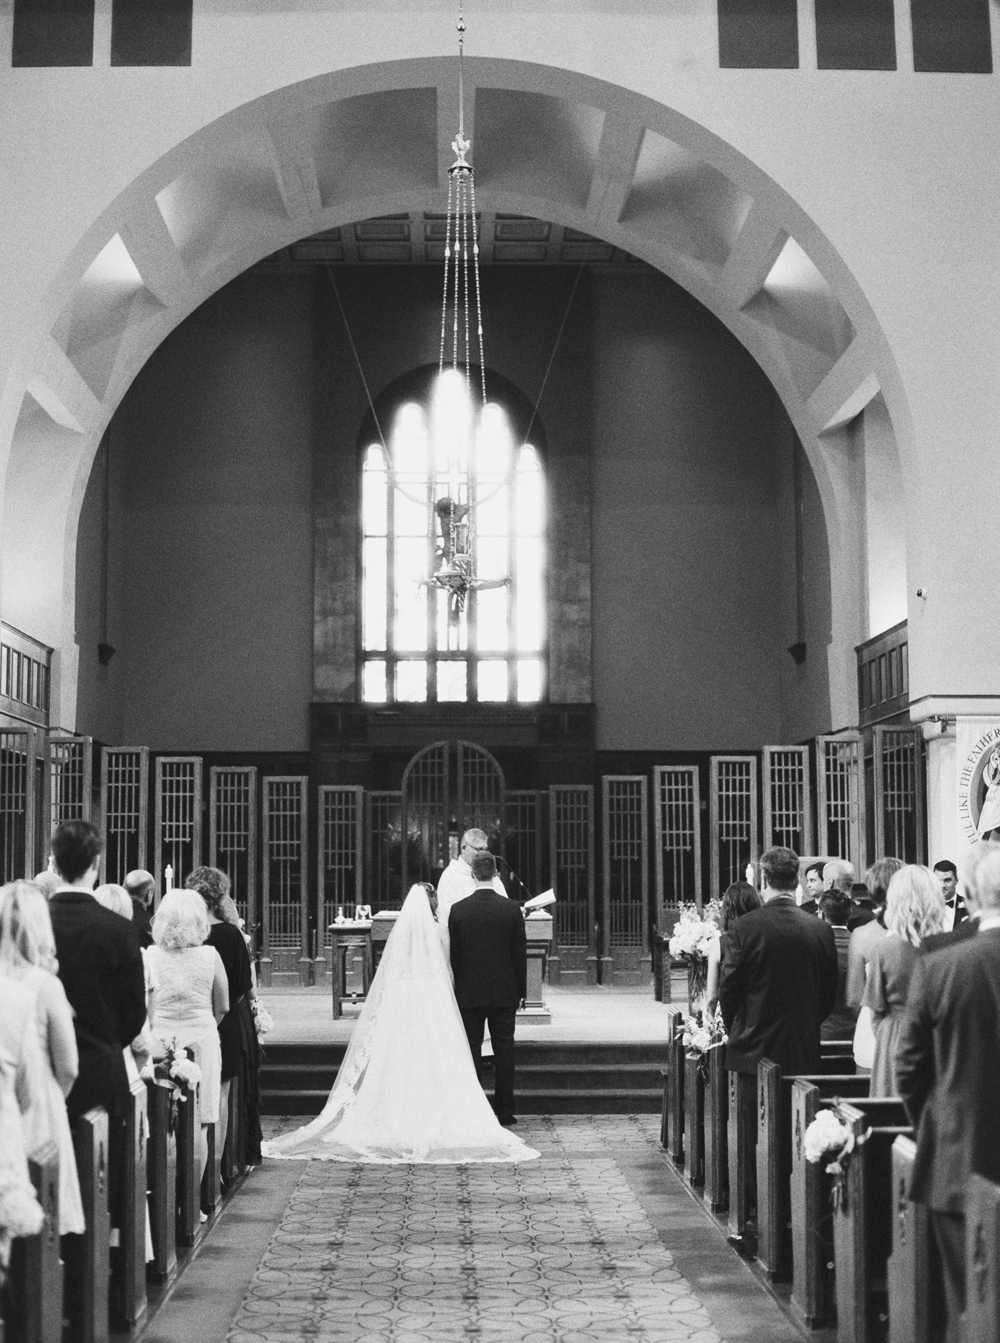 Calgary Wedding Photographer | Canmore Wedding Photographers | Banff Wedding Photography | Fairmont Palliser | Calgary Church | Blue bridesmaids